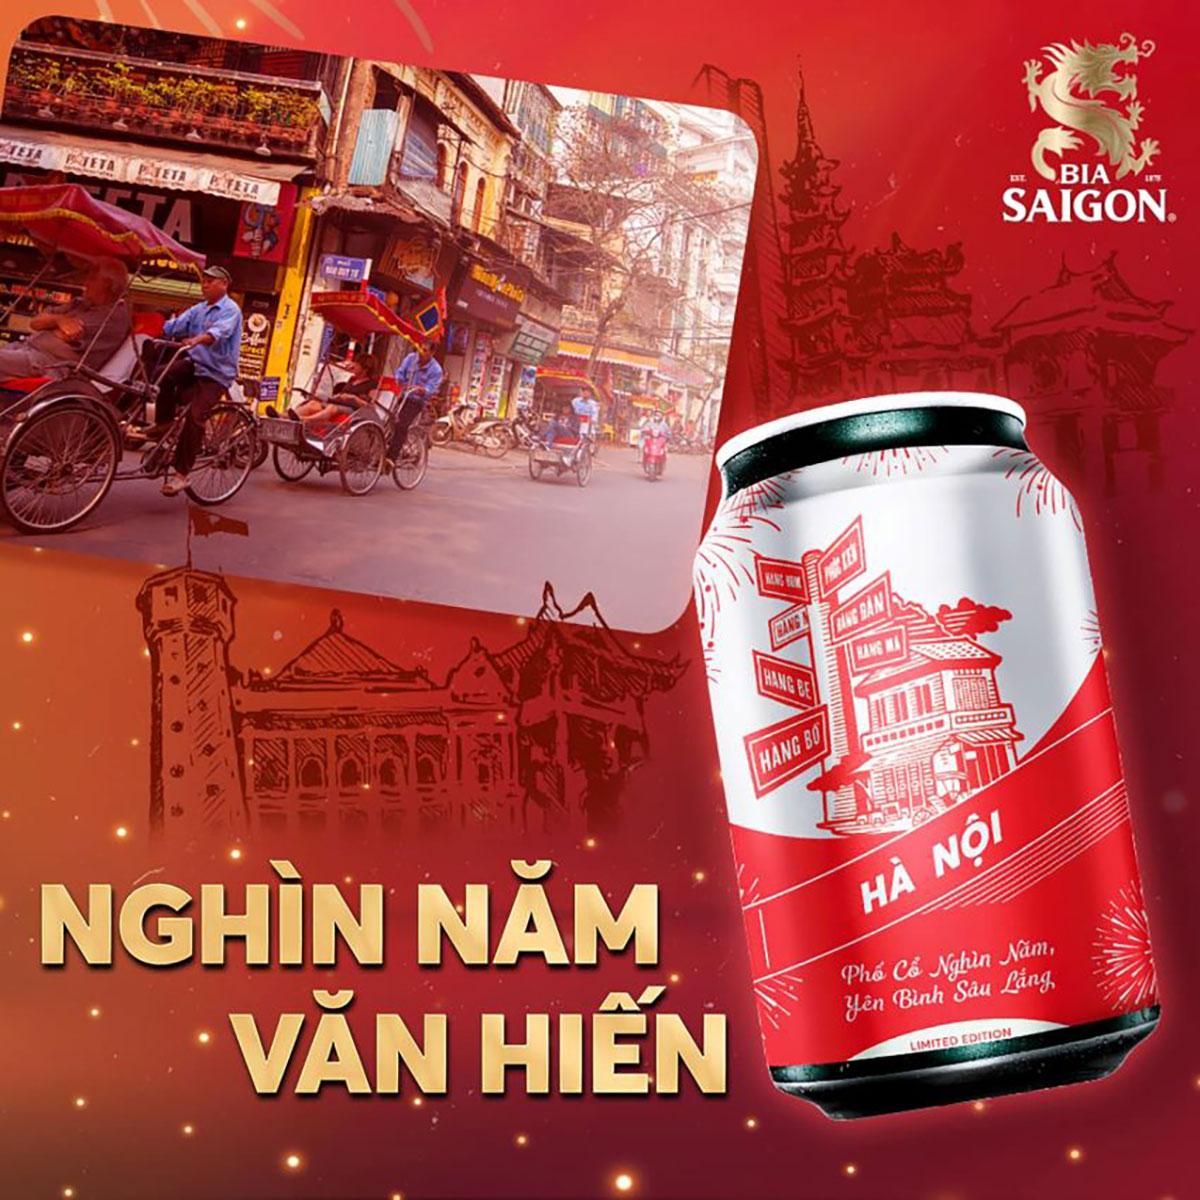 Để quên đi những phiền muộn, thư giãn cùng ly Bia Saigon. Ngắm nhìn hình ảnh tuyệt đẹp về loại bia này và cảm nhận tinh thần thoải mái mà nó mang lại.